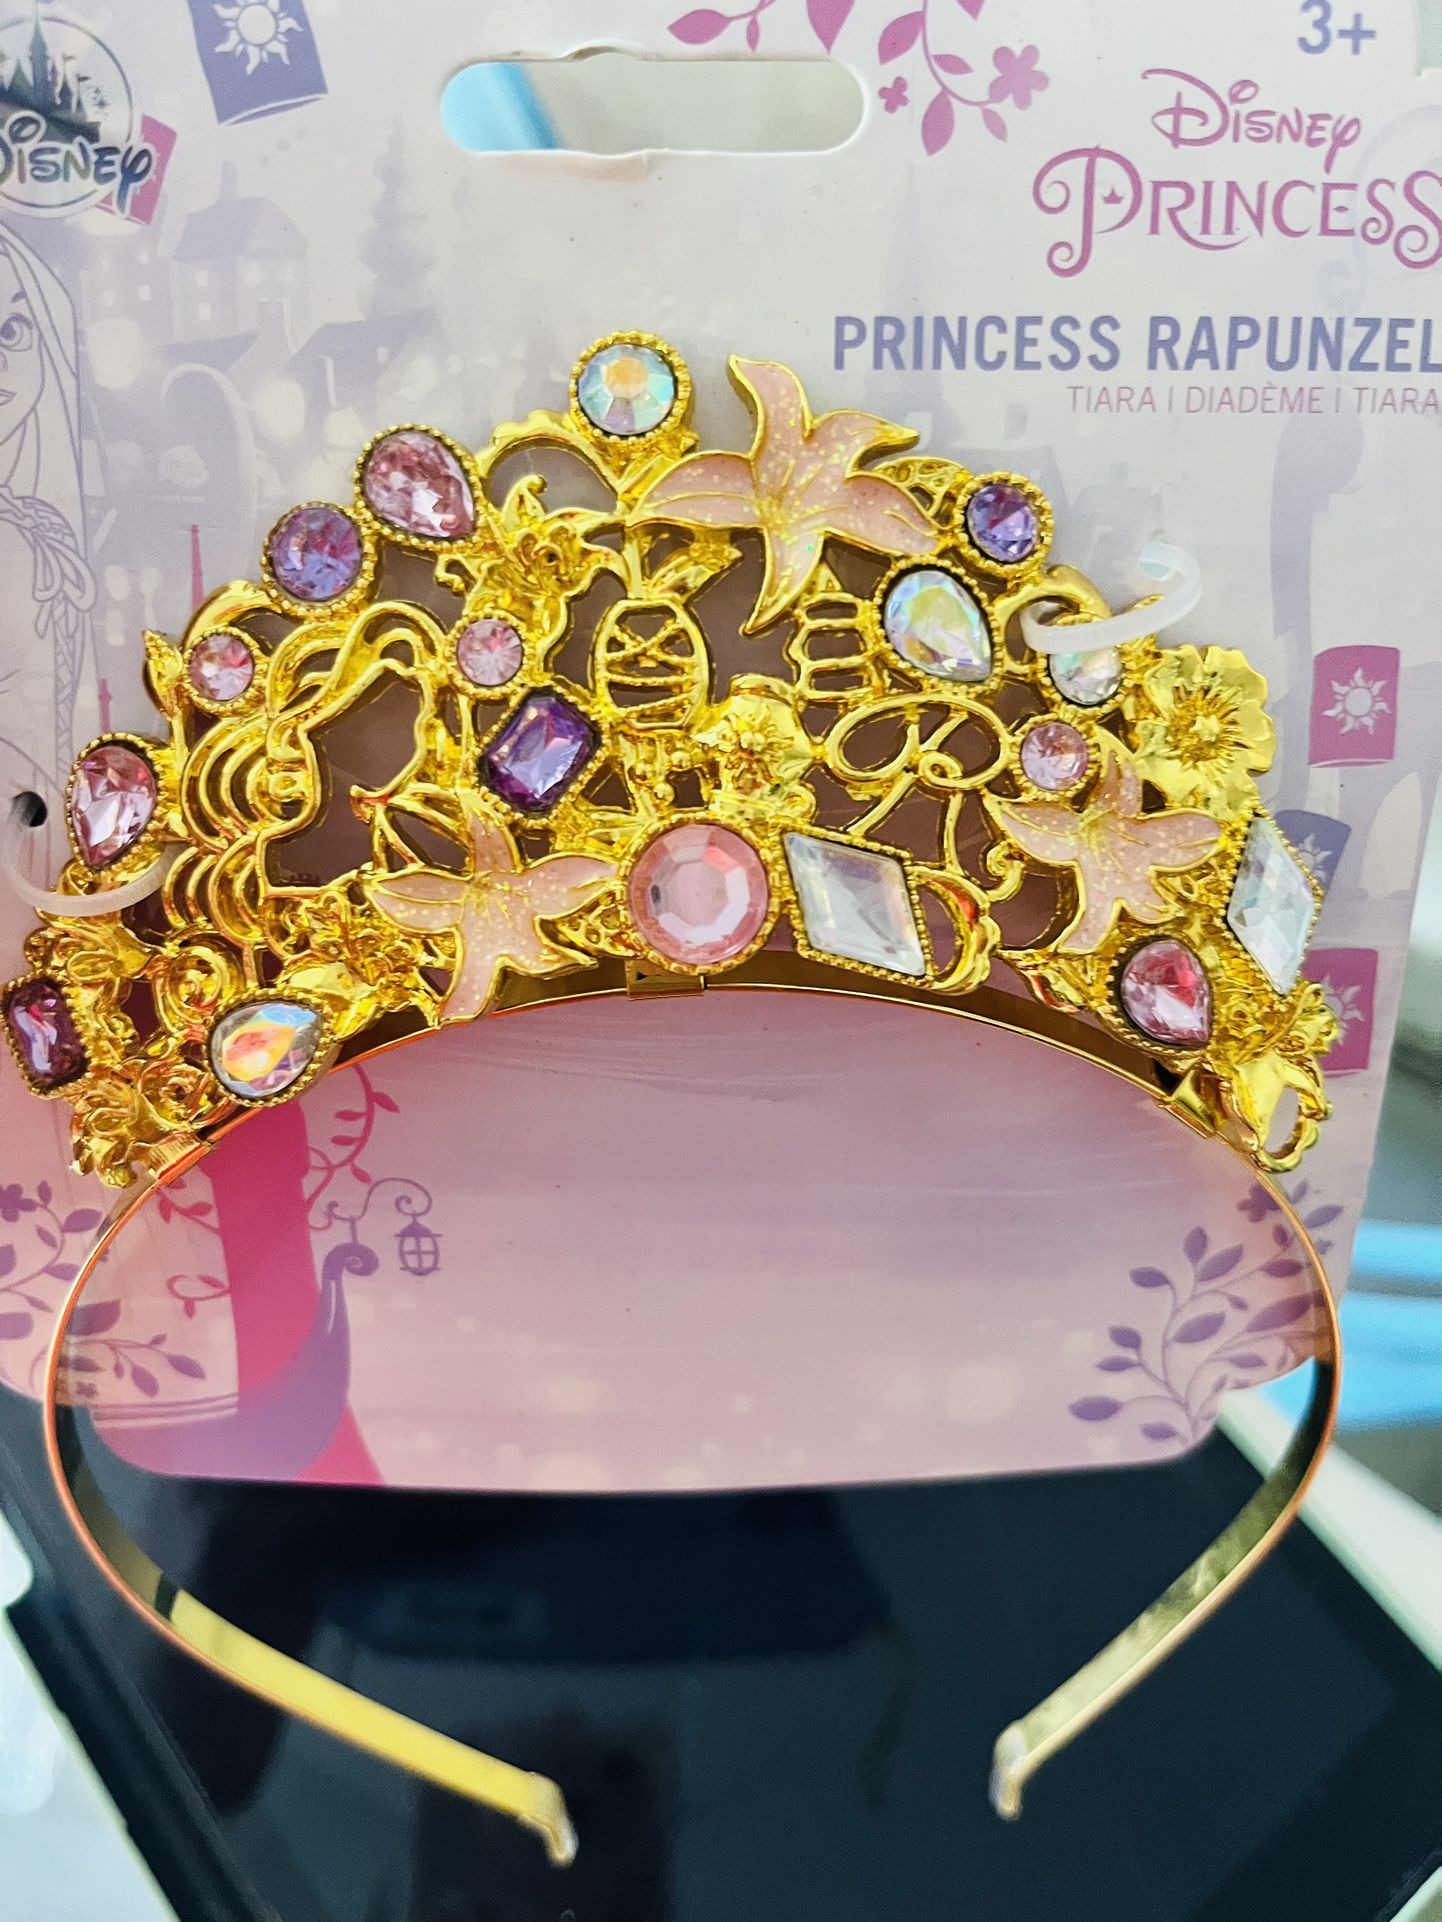 Princess Rapunzel”s Tiara